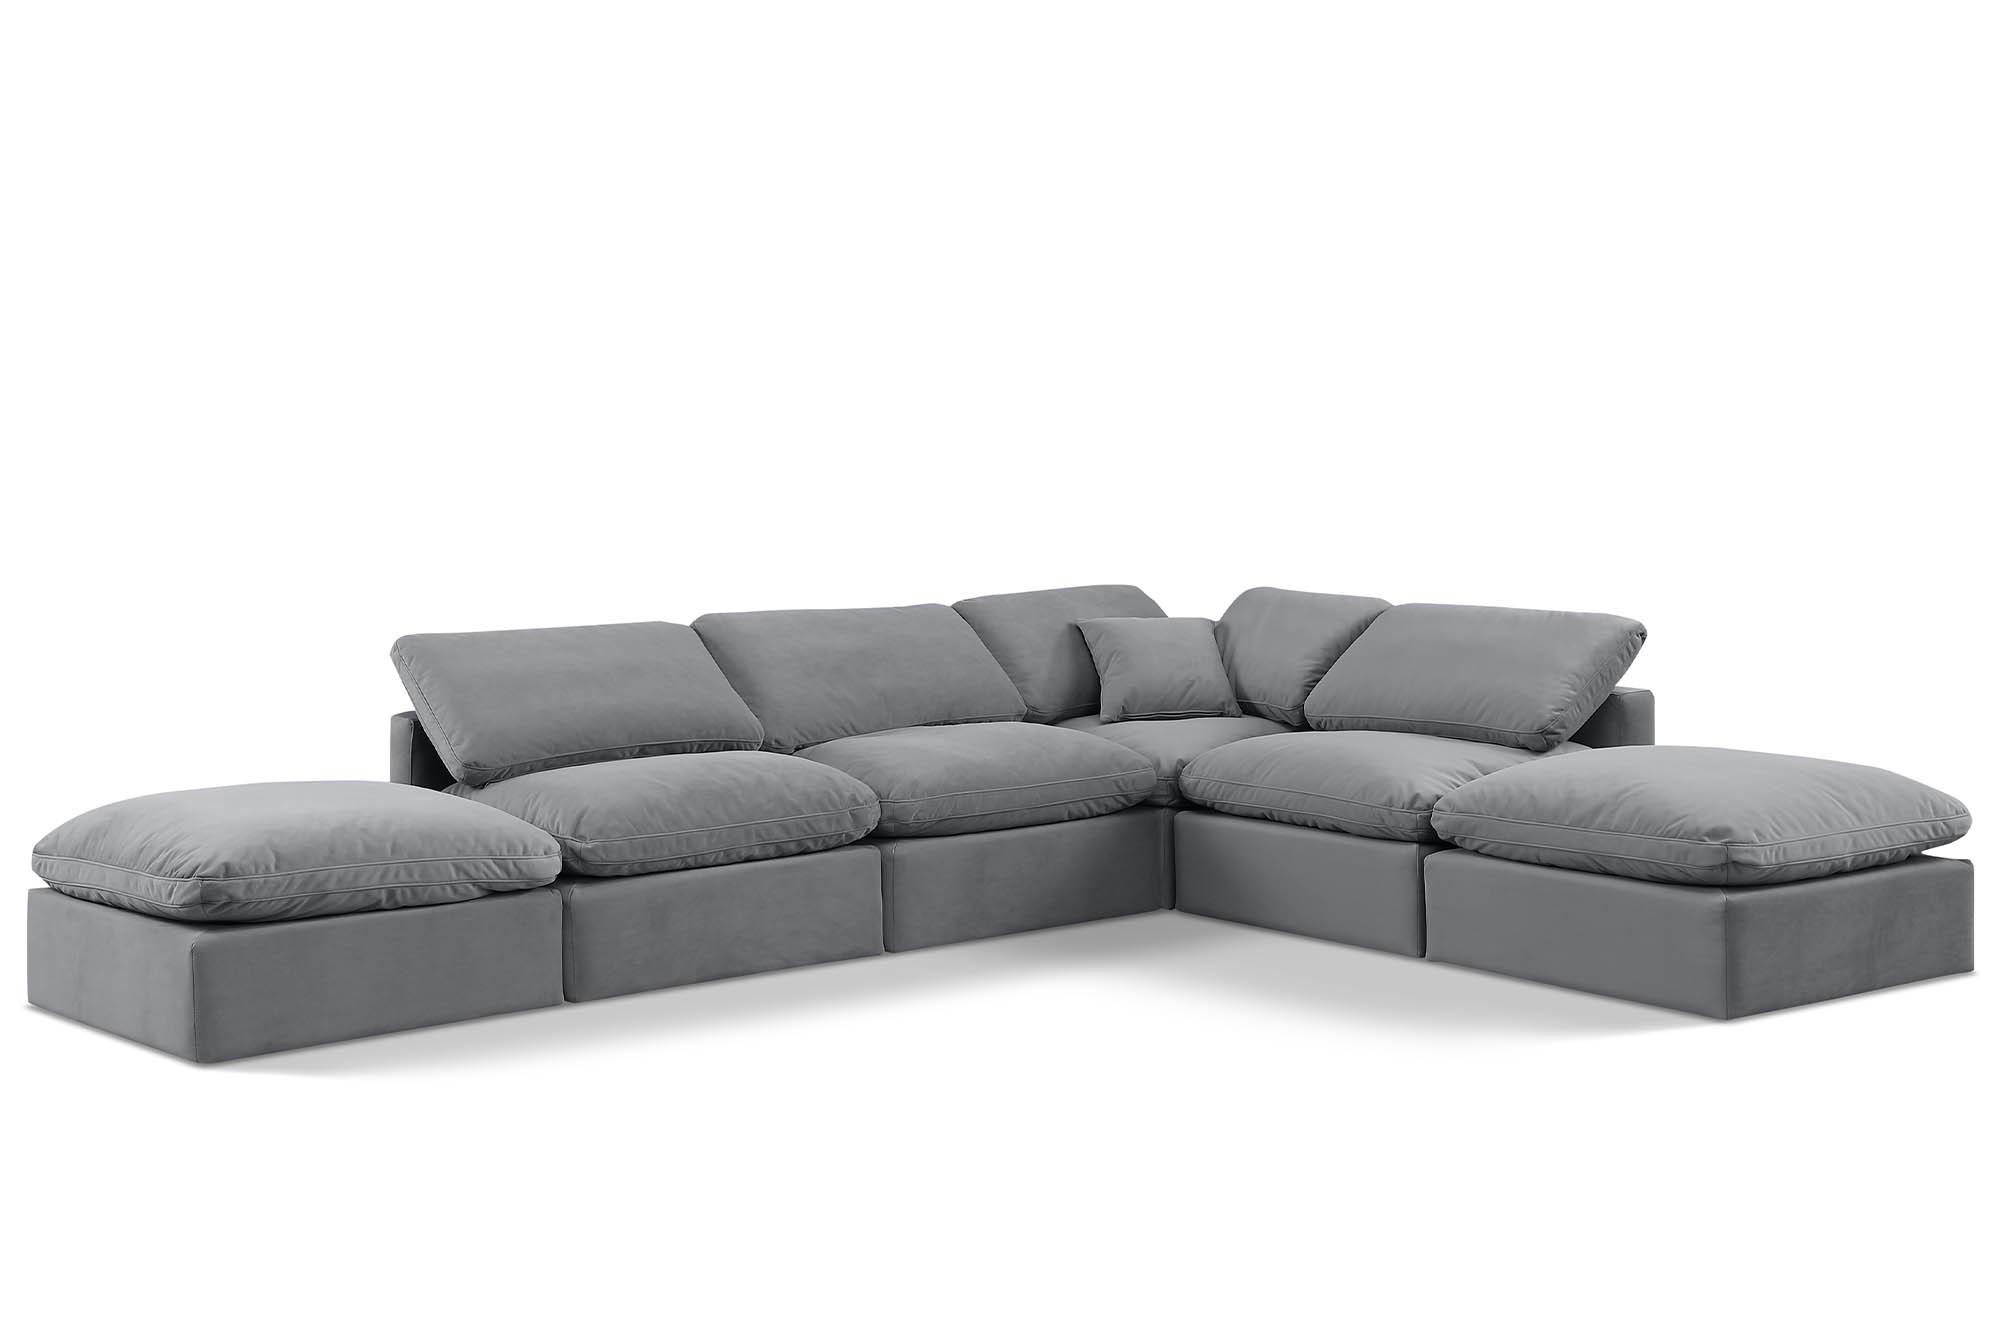 Contemporary, Modern Modular Sectional Sofa INDULGE 147Grey-Sec6E 147Grey-Sec6E in Gray Velvet